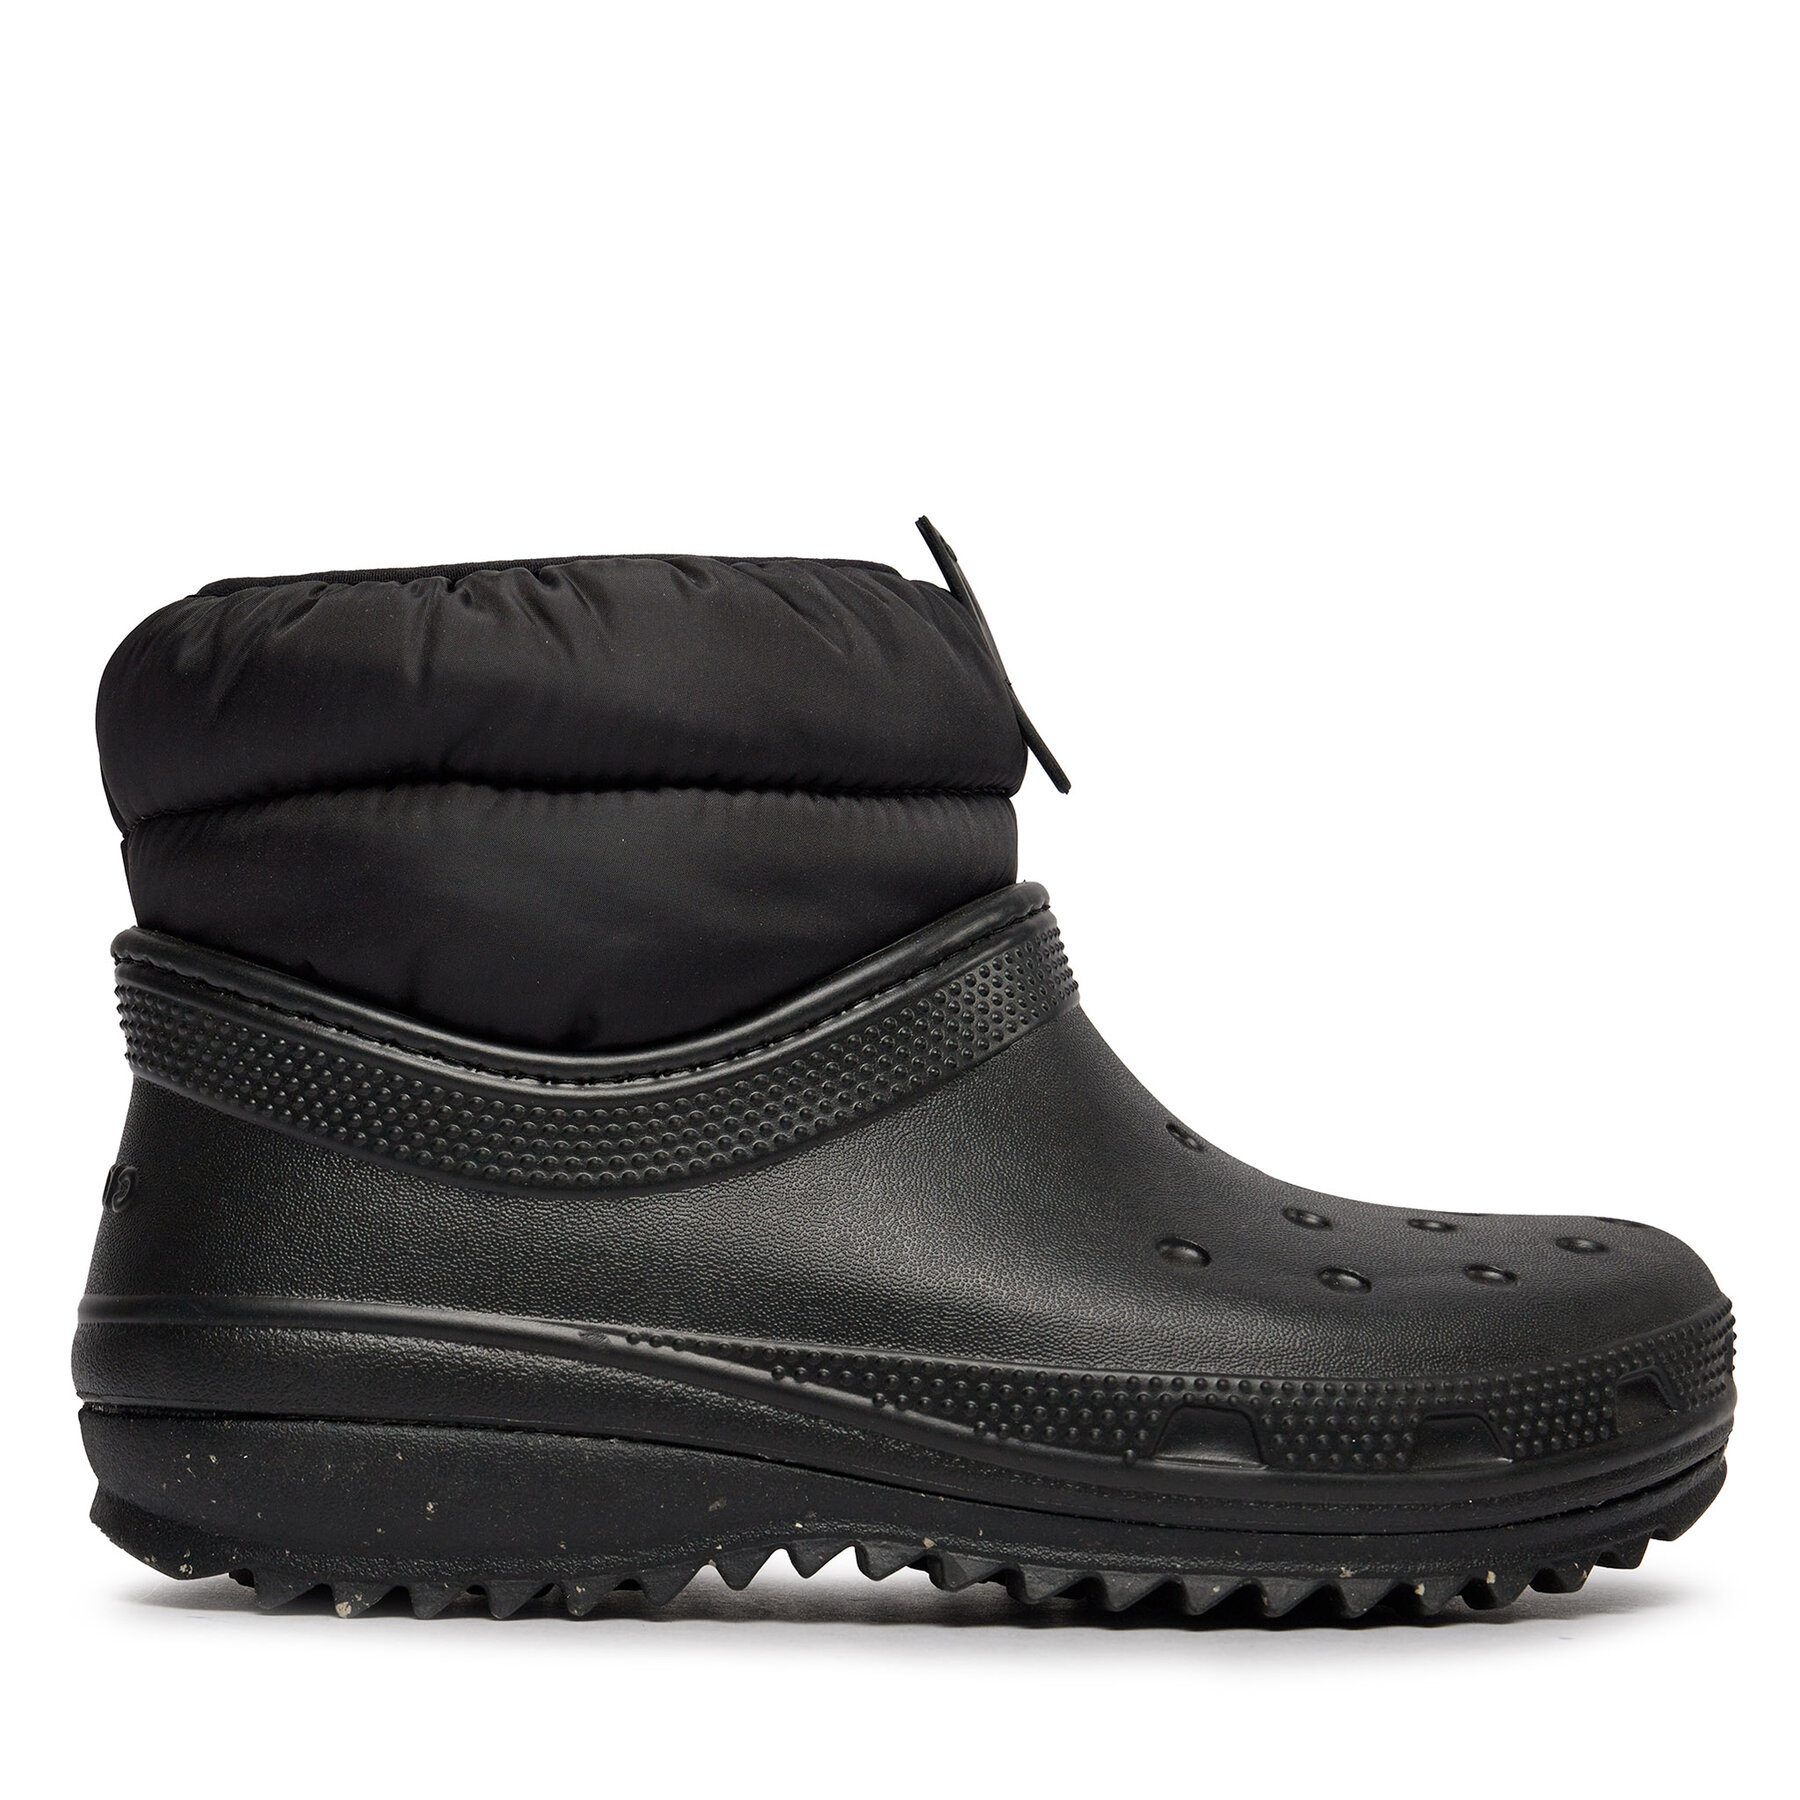 Comprar en oferta Crocs Women's Classic Neo Puff Shorty Boot